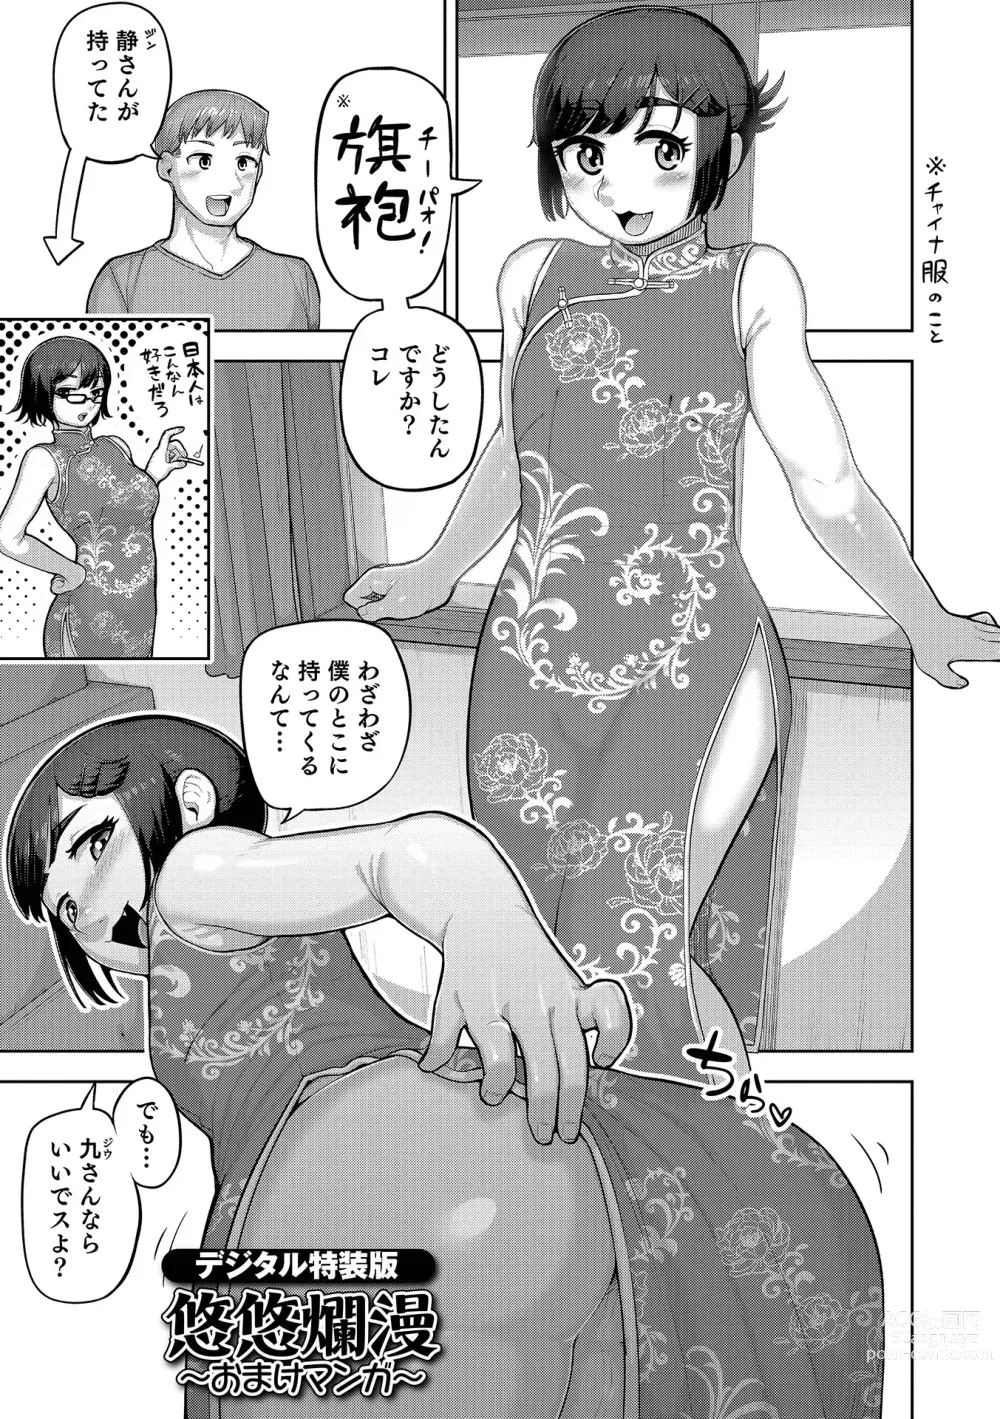 Page 193 of manga Muchiniku Otokonoko Tenshi’s